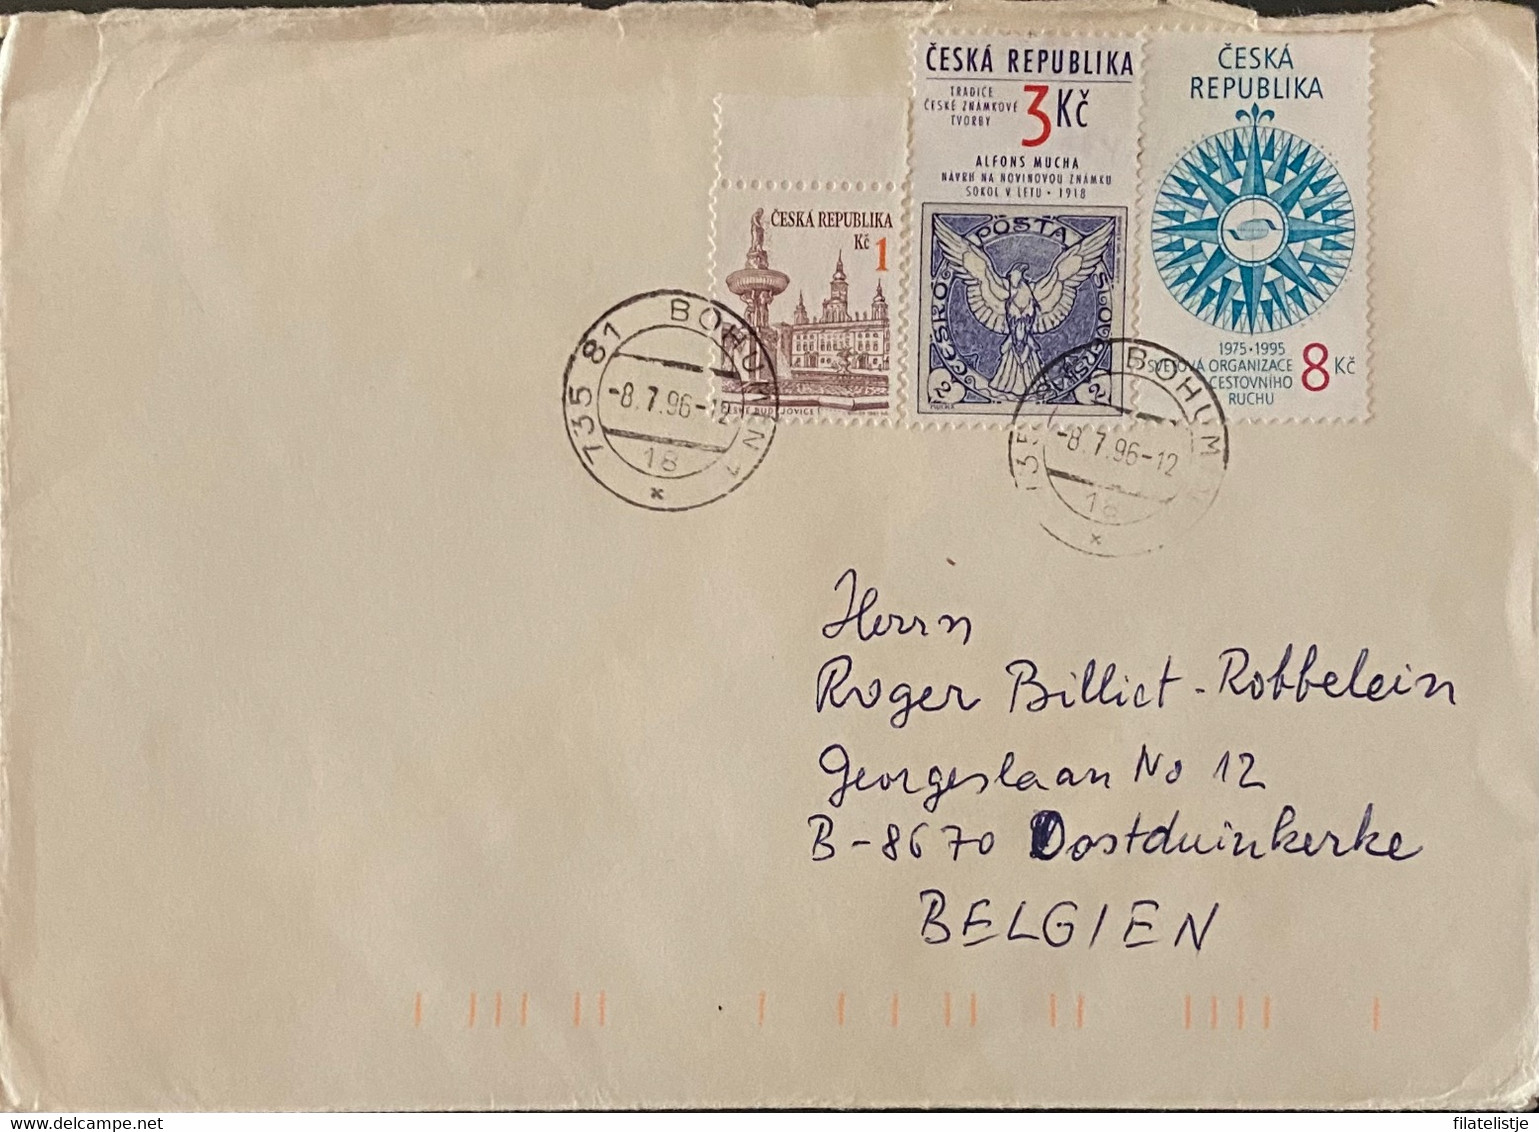 Tsjechië Republiek Omslag - Enveloppes